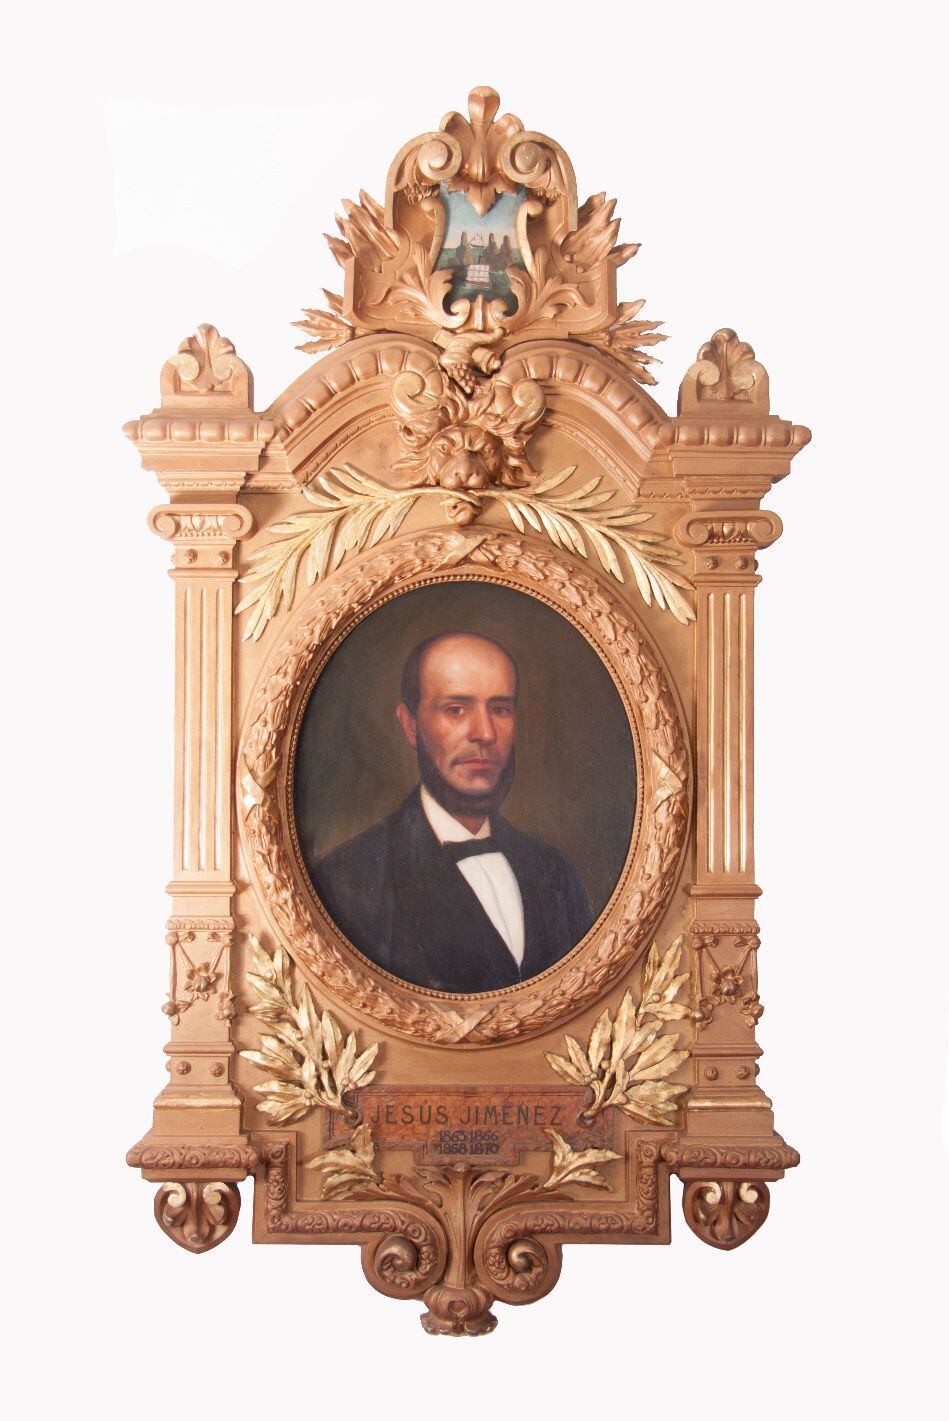 Jesús Jiménez Zamora fue presidente de Costa Rica. Reconocido personaje cartaginés, vivió del 18 de junio de 1823 al 12 de febrero de 1897.